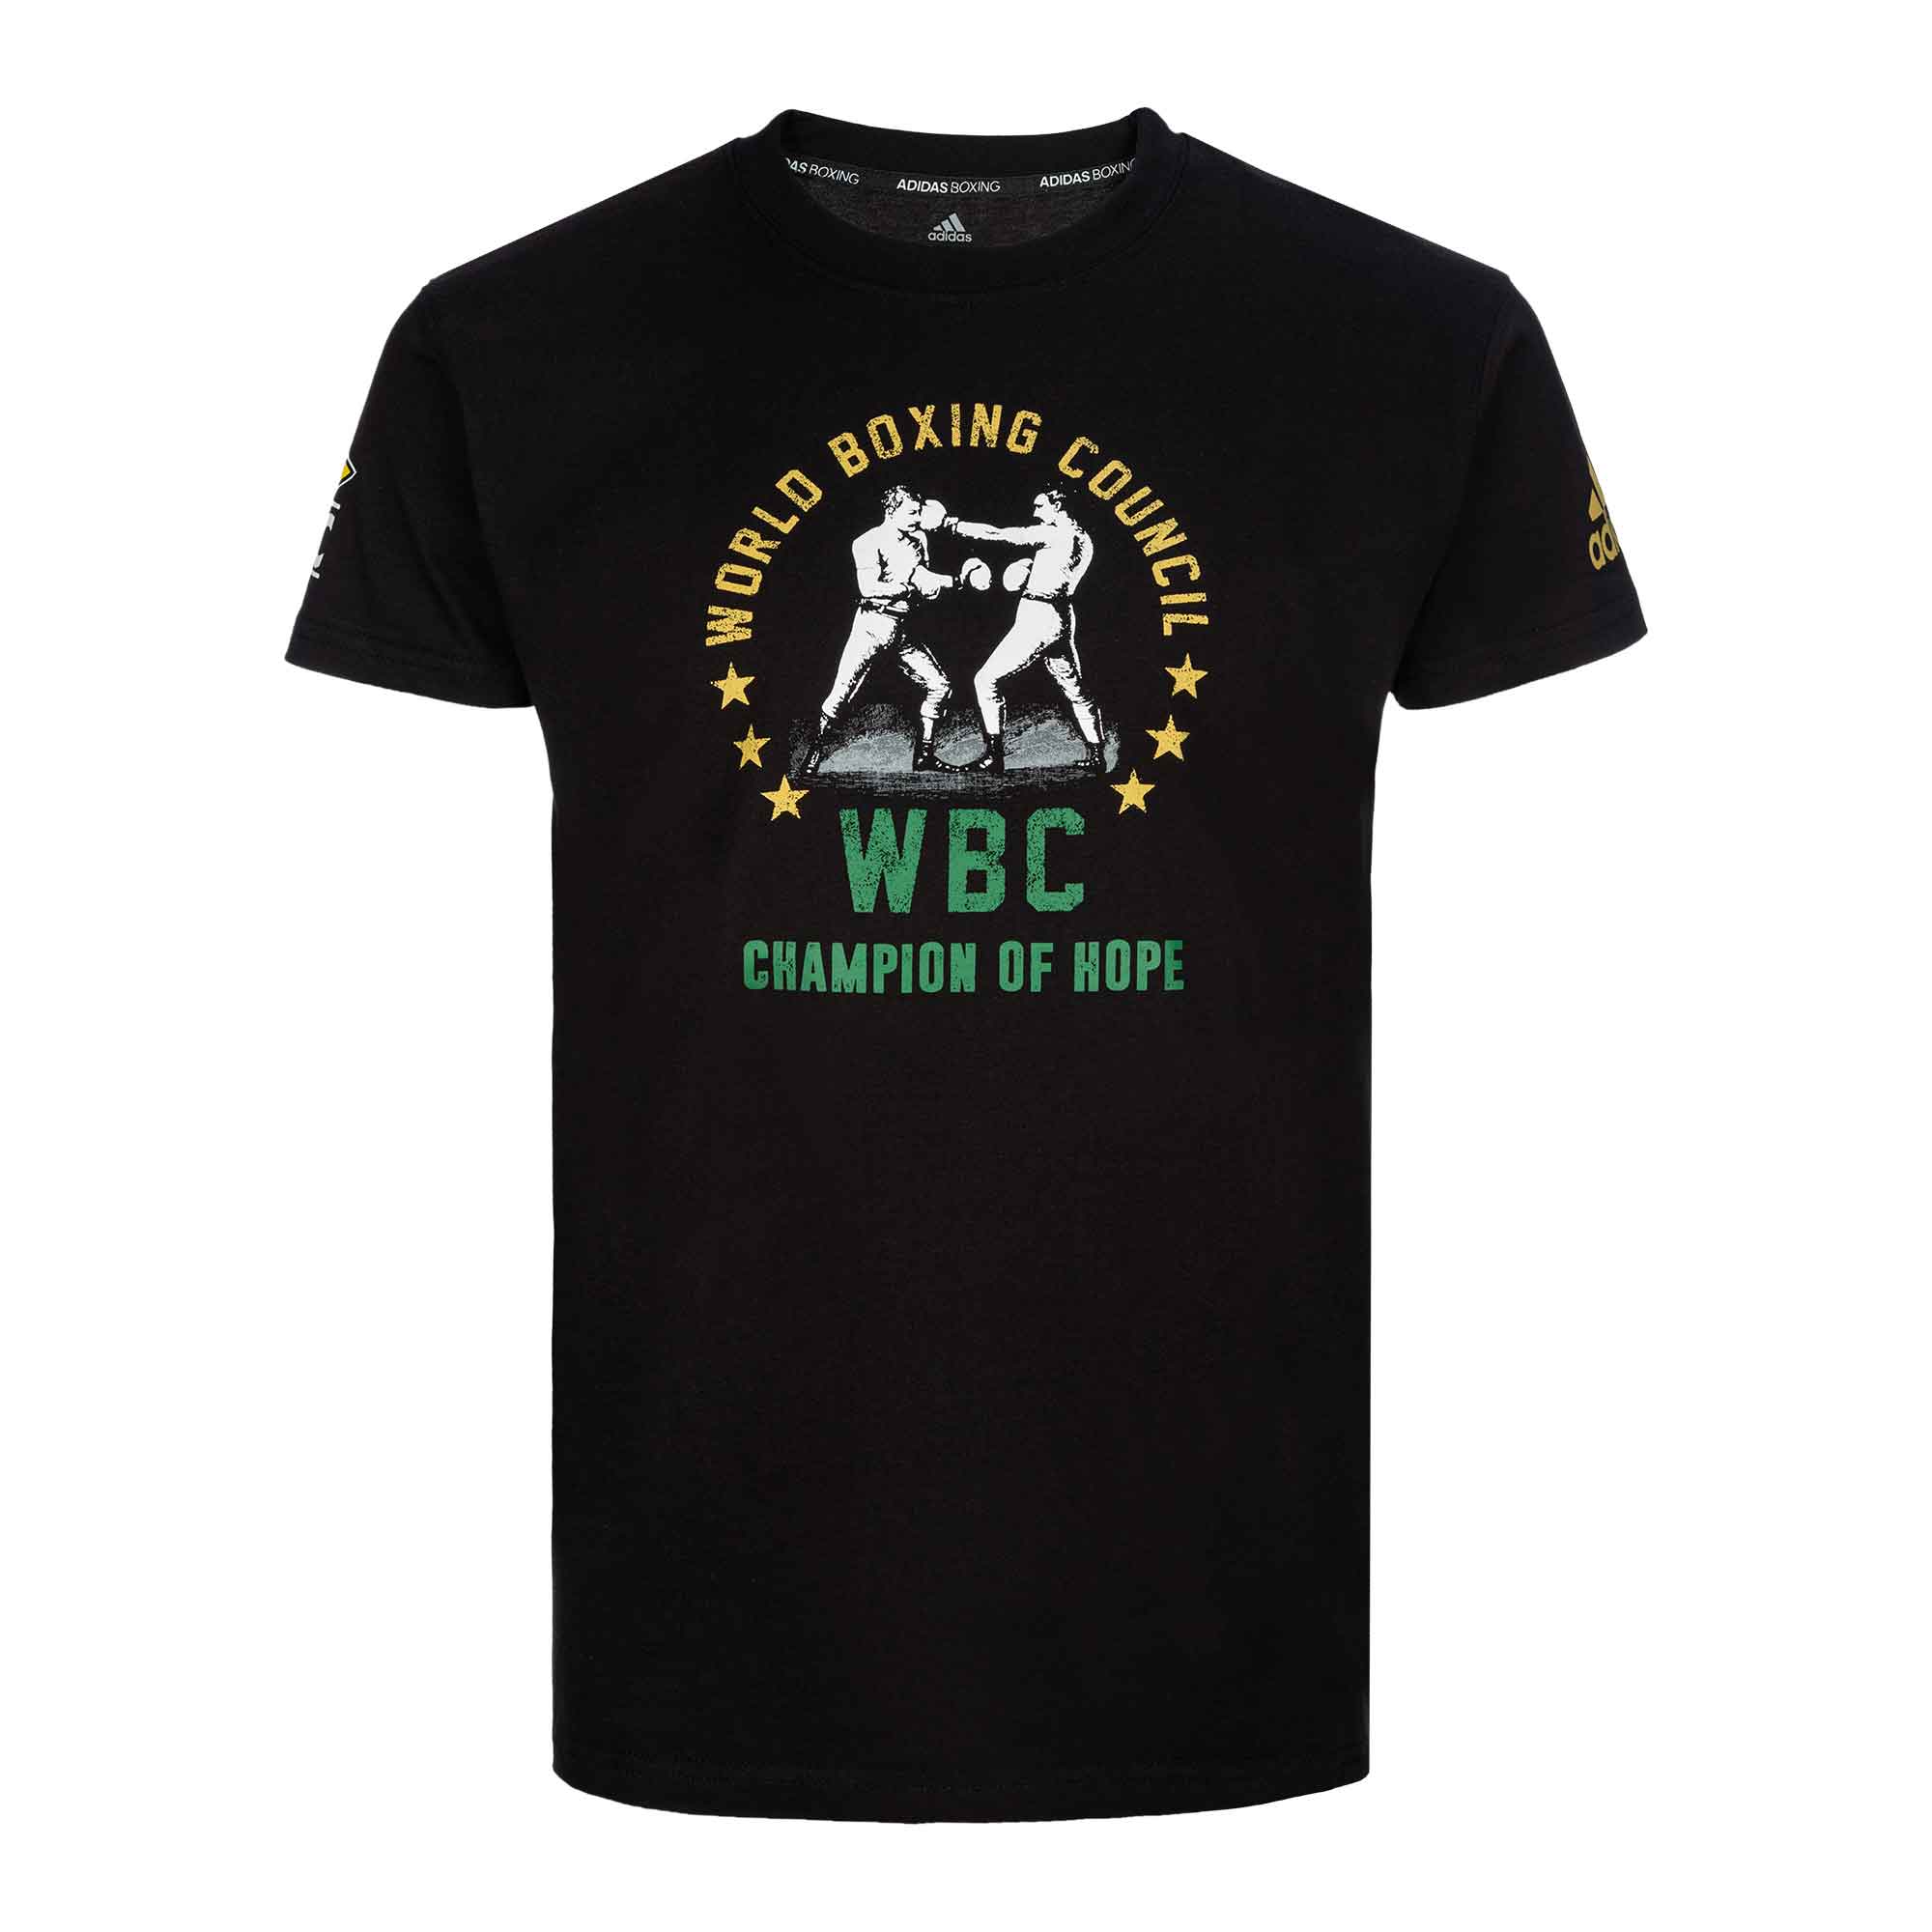 Футболка World Boxing Council WBC Champion of Hope черная (размер M)